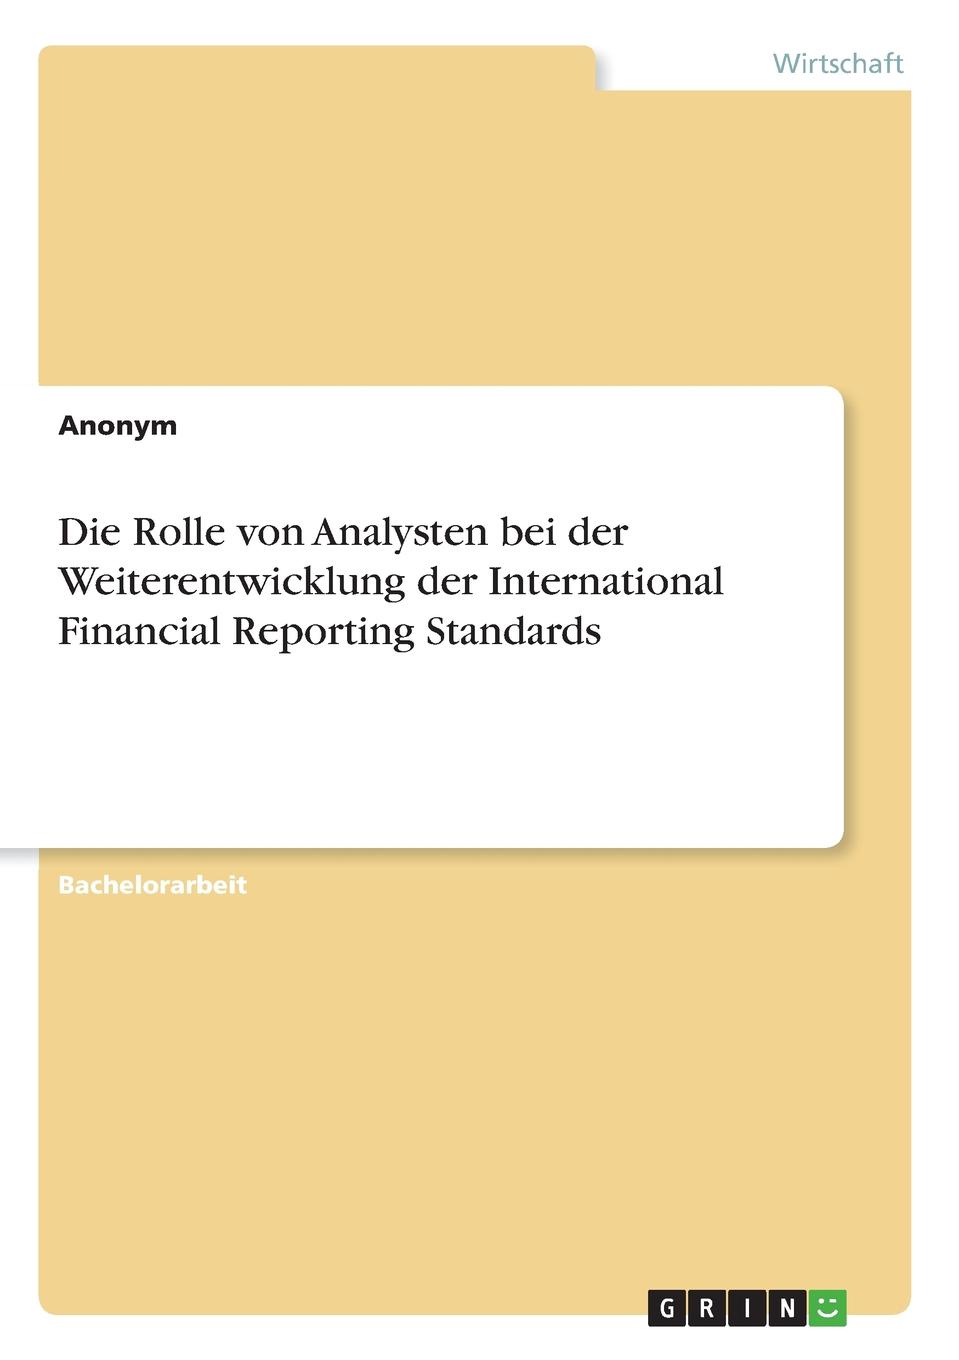 фото Die Rolle von Analysten bei der Weiterentwicklung der International Financial Reporting Standards